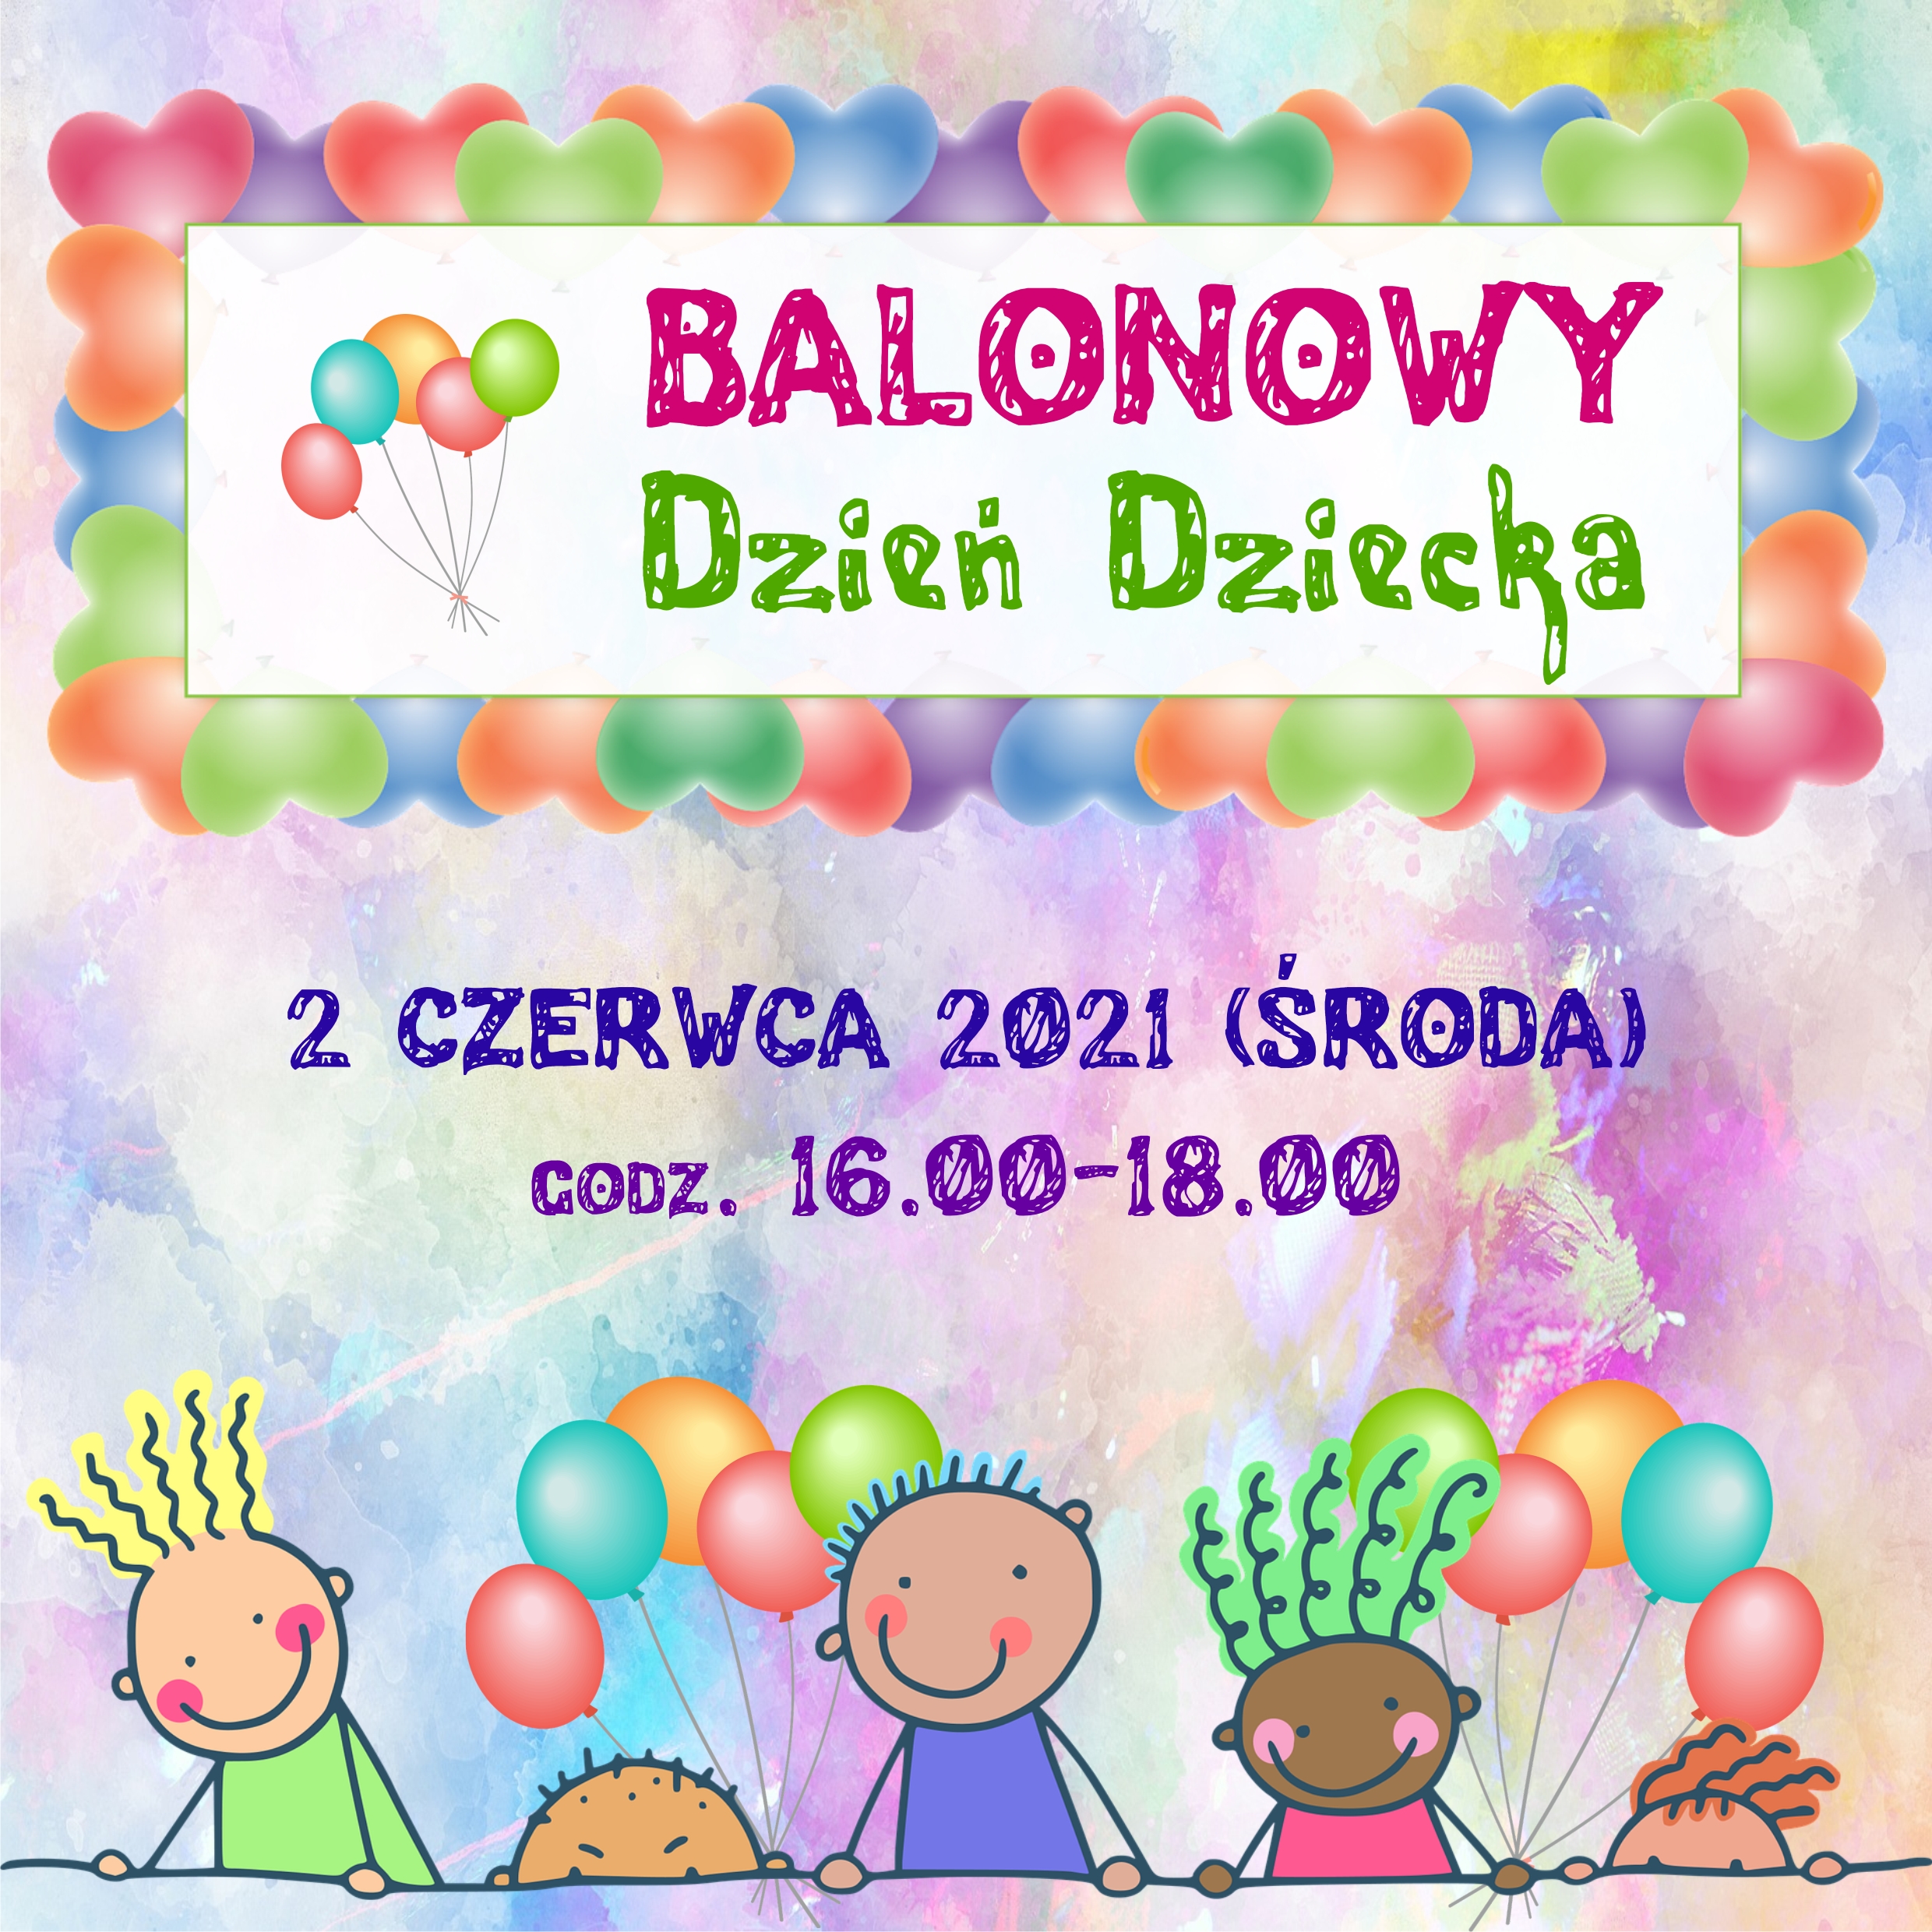 Balonowy Dzień Dziecka - 2 Czerwca 2021 (środa) - Godz. 16.00-18.00